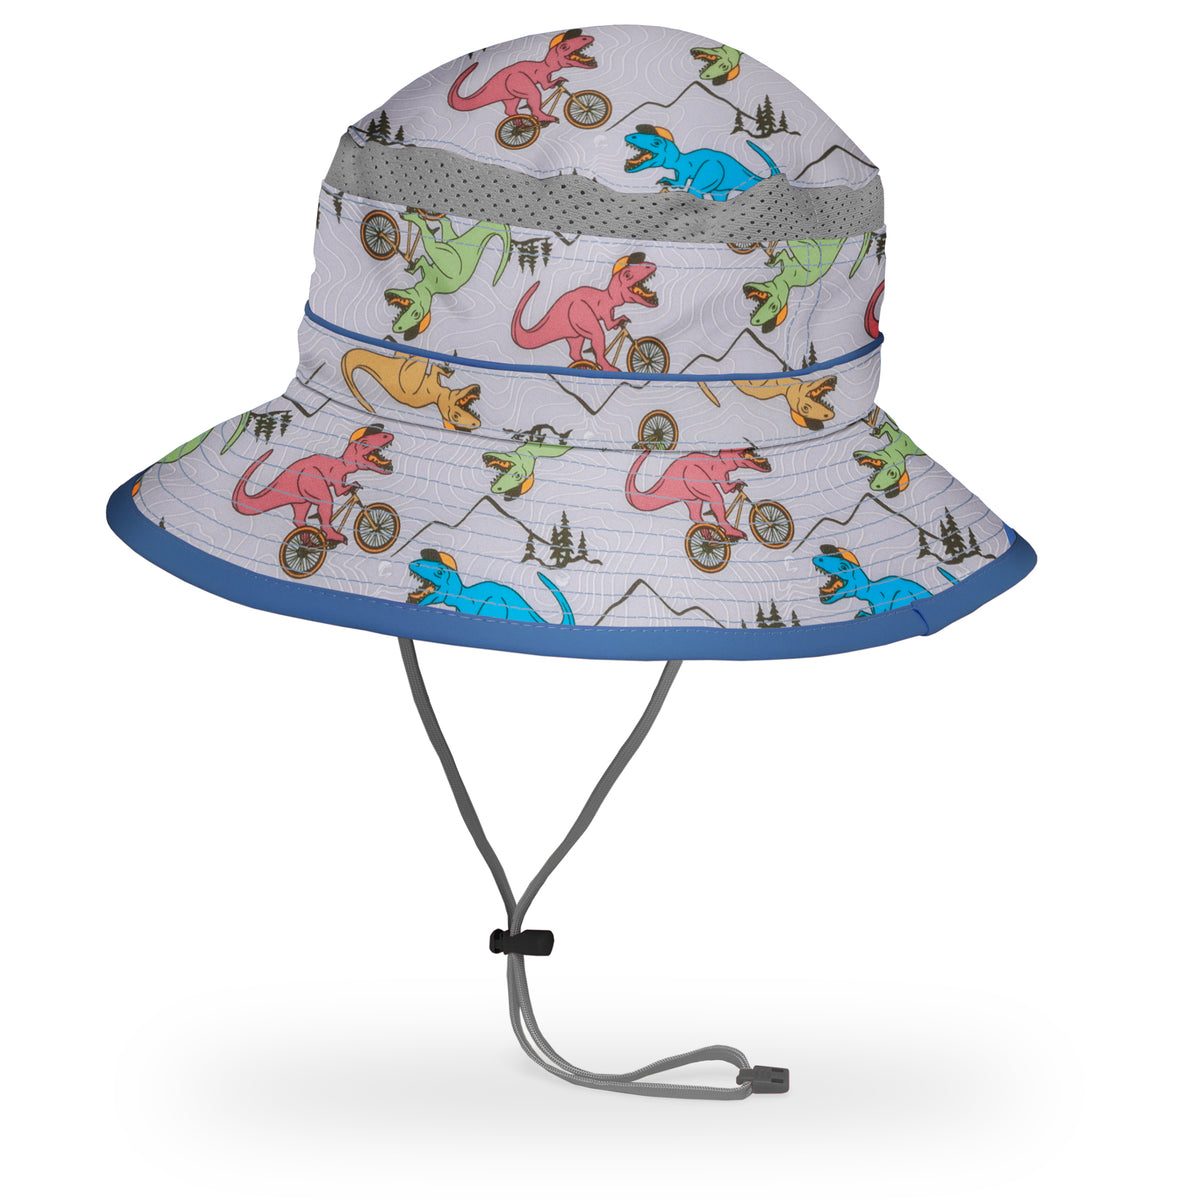 Custom Bucket Hats for Kids | Little Chicken Kids L/XL - Age 8- 12 / Pastel Multi Tie Dye